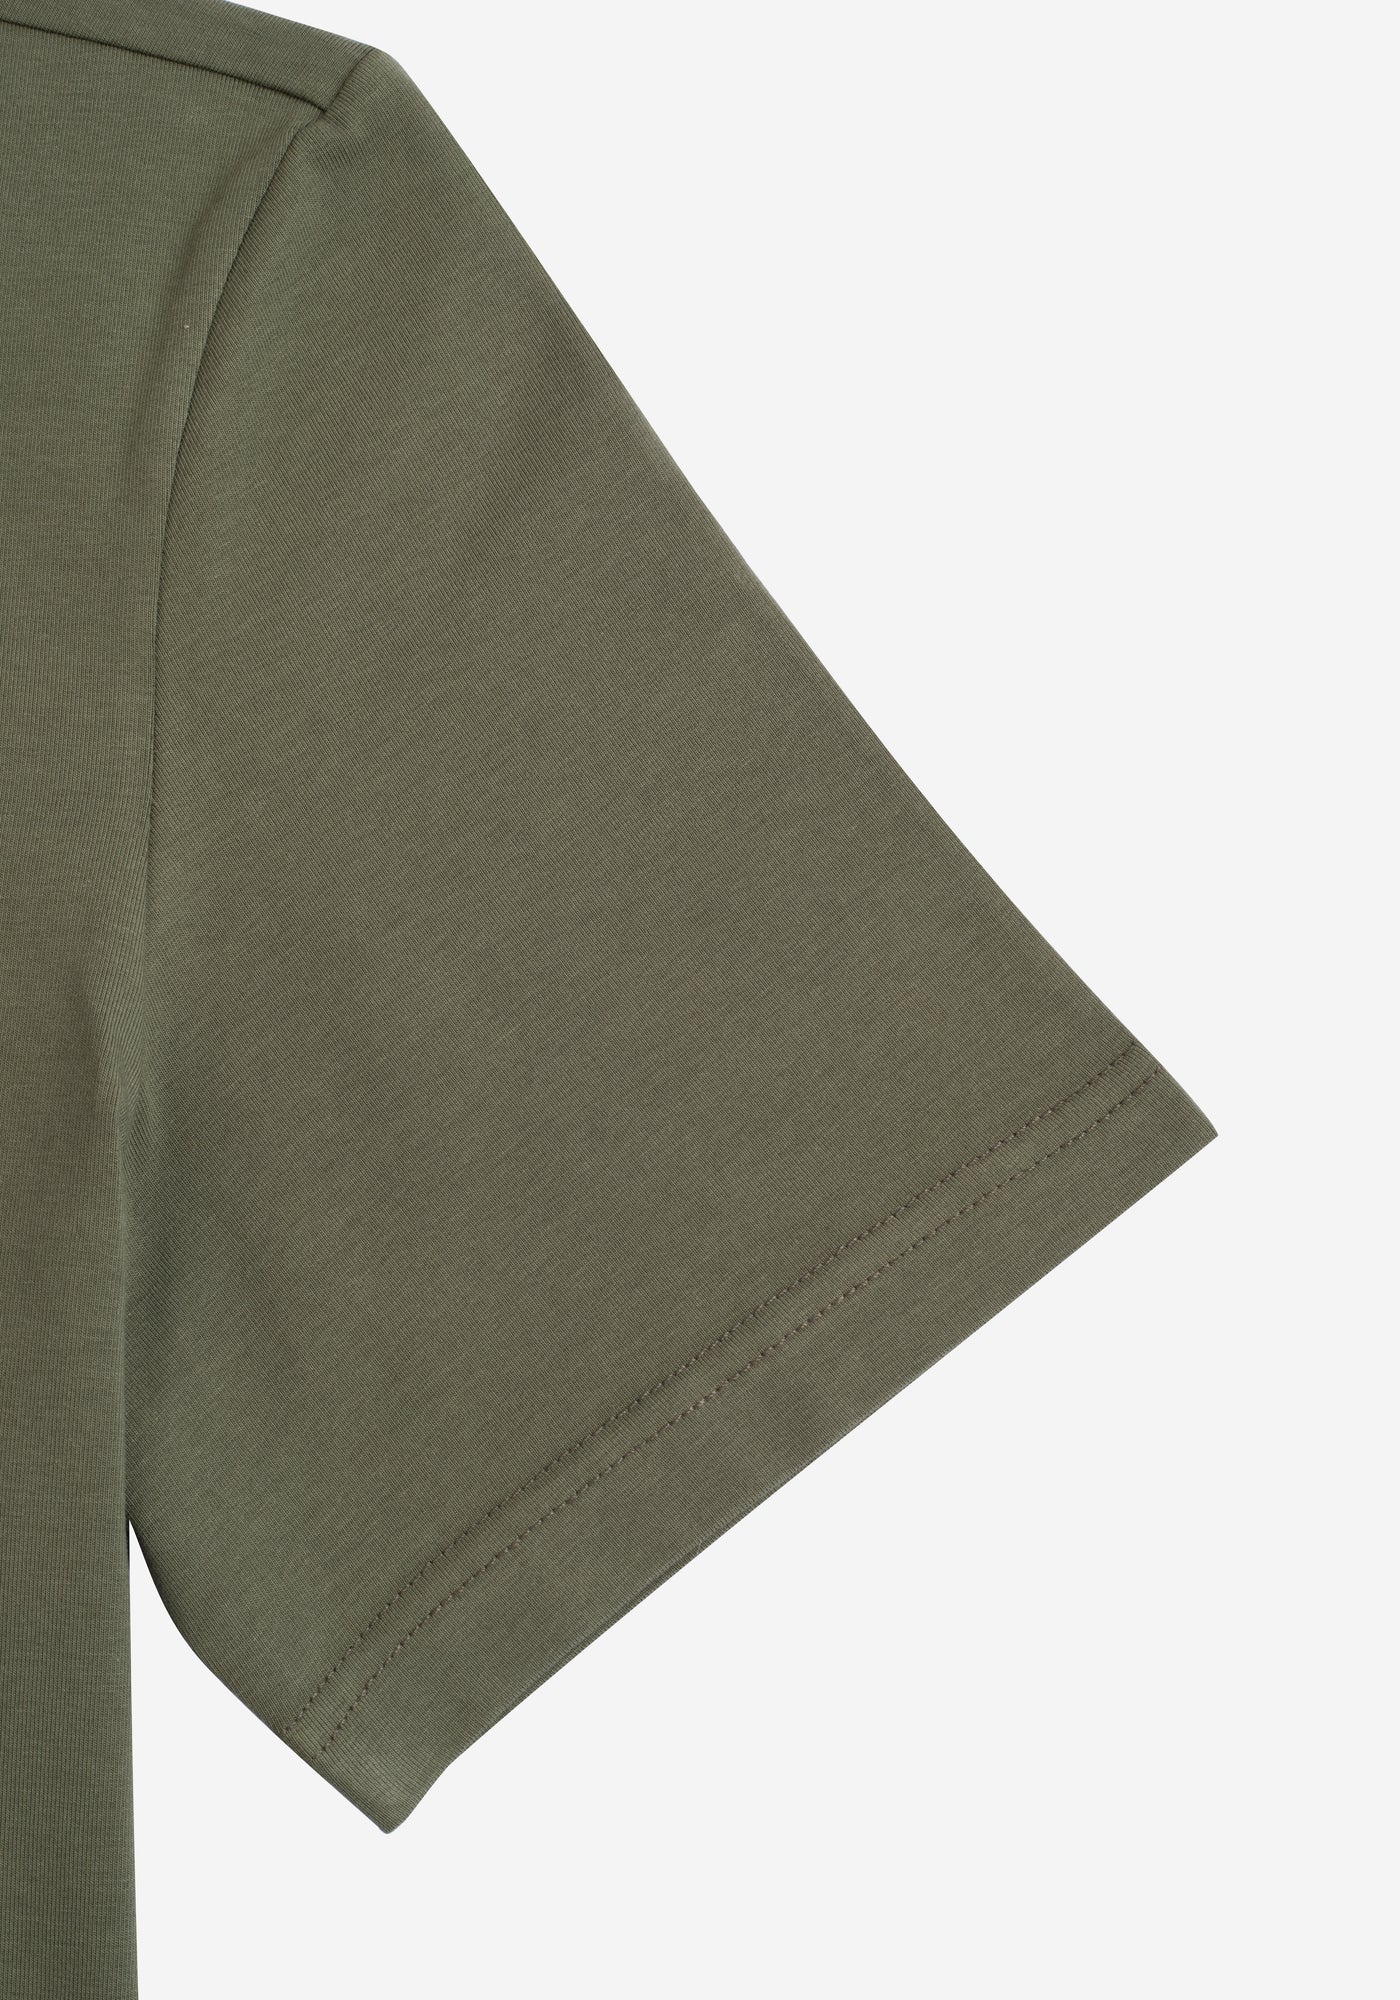 Dull Olive Cotton Undershirt - Short Sleeve